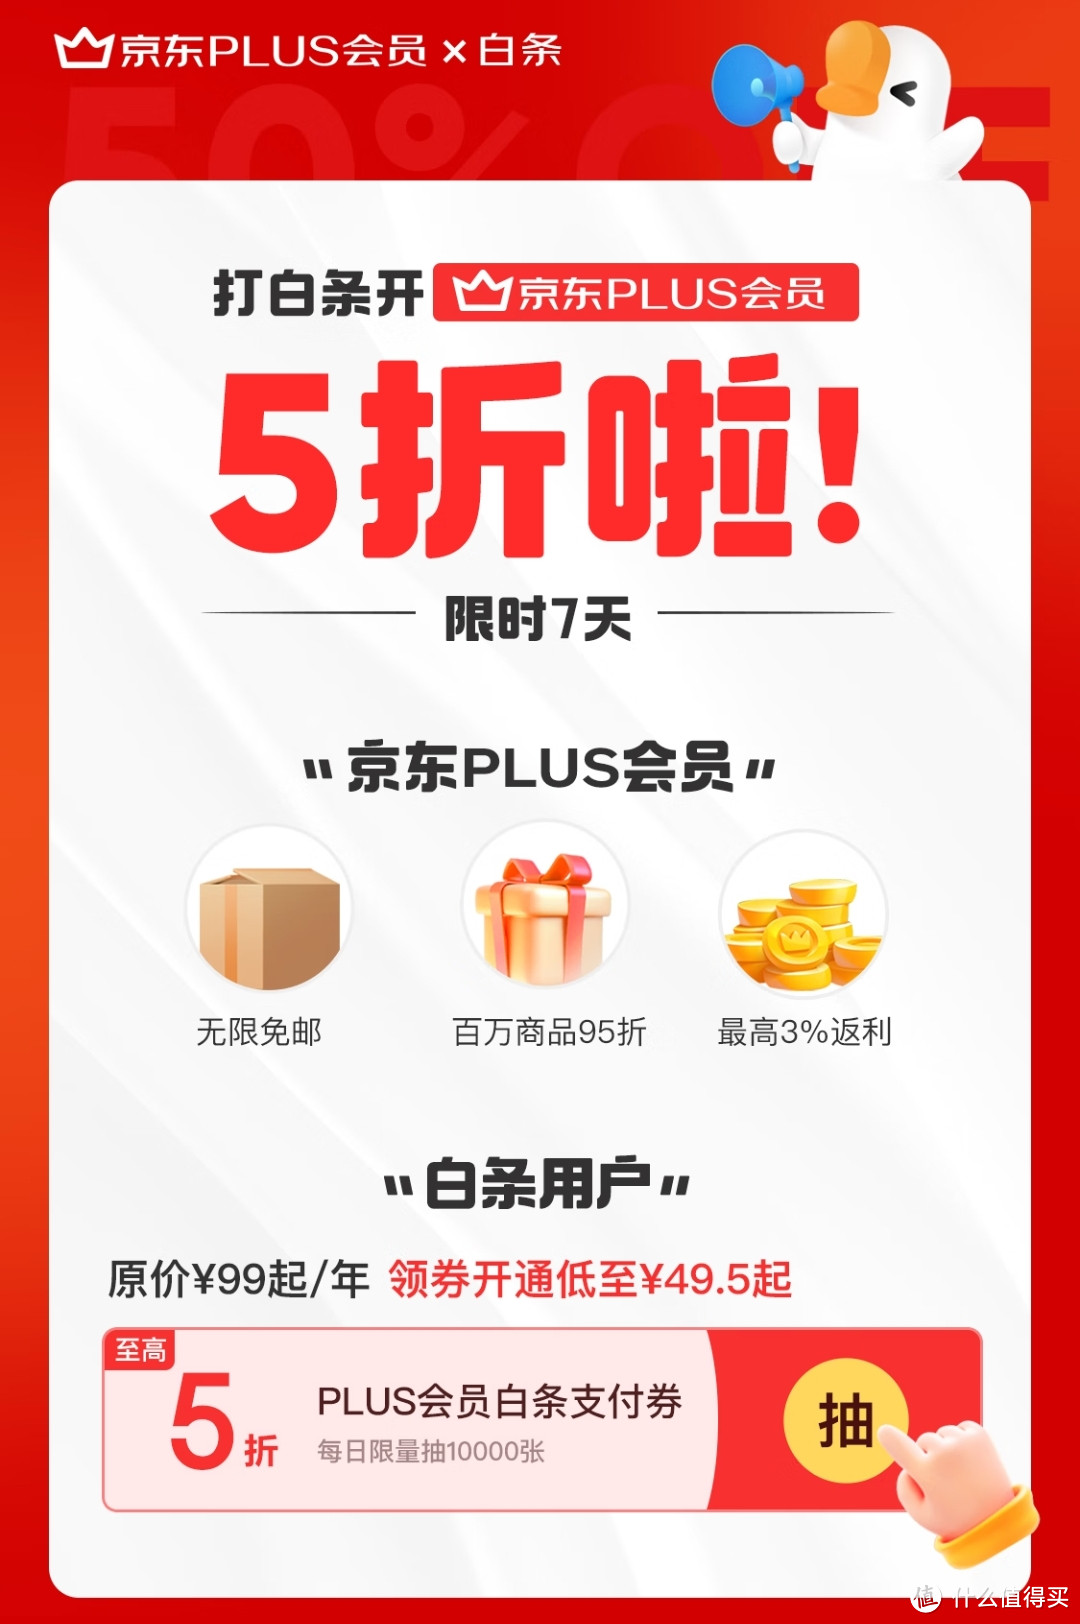 8月低限时活动丨【49.6元=PLUS年卡+1号店年卡+360元鸡蛋】,每天放量,赶紧冲!